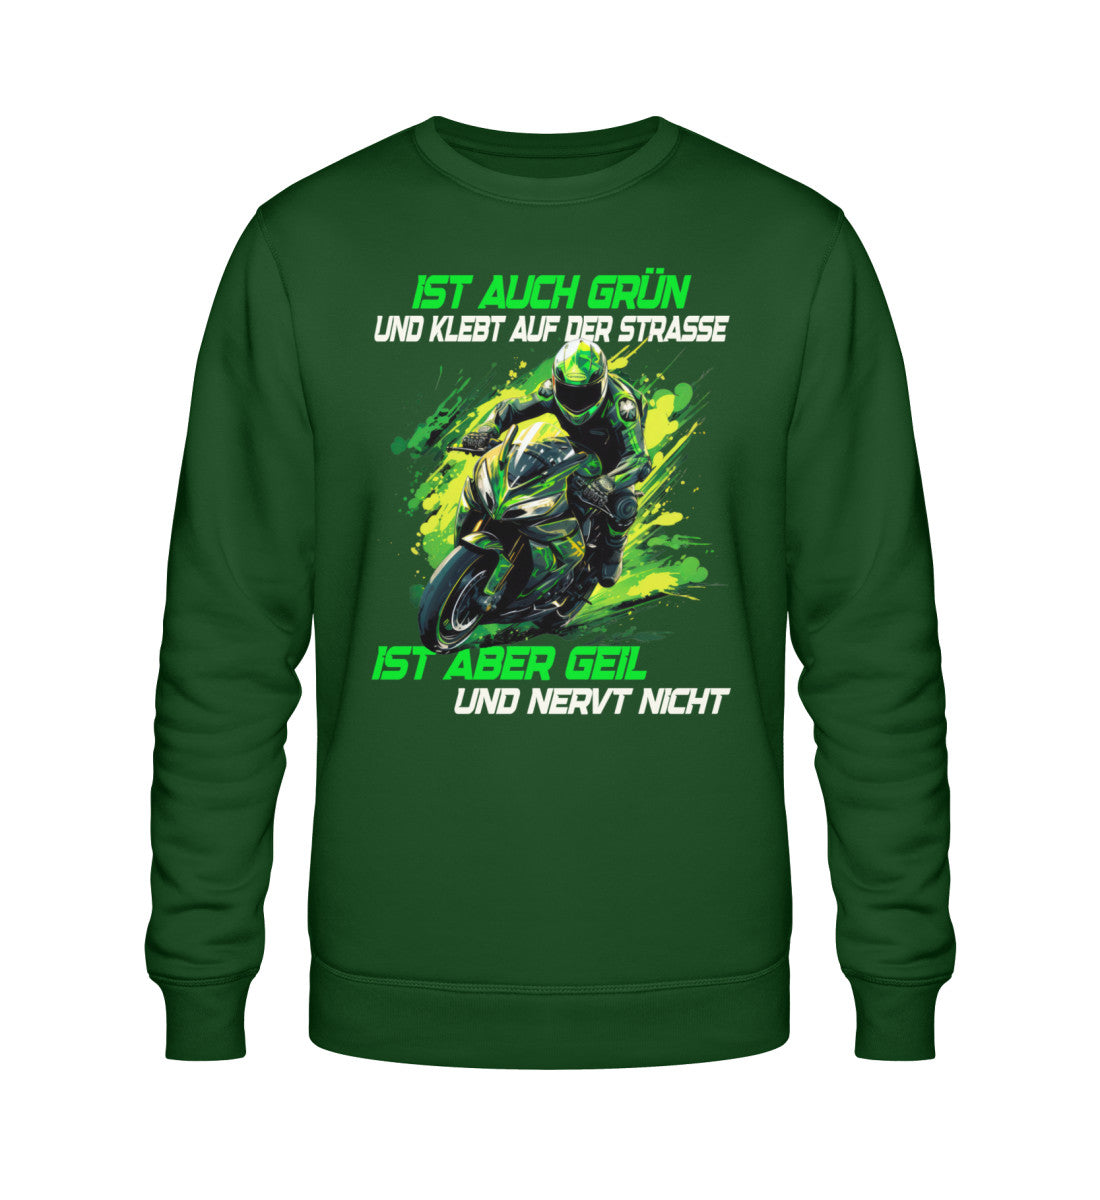 Ein Biker Sweatshirt für Motorradfahrer von Wingbikers mit dem Aufdruck, Ist auch grün und klebt auf der Straße, ist aber geil und nervt nicht! - in dunkelgrün.